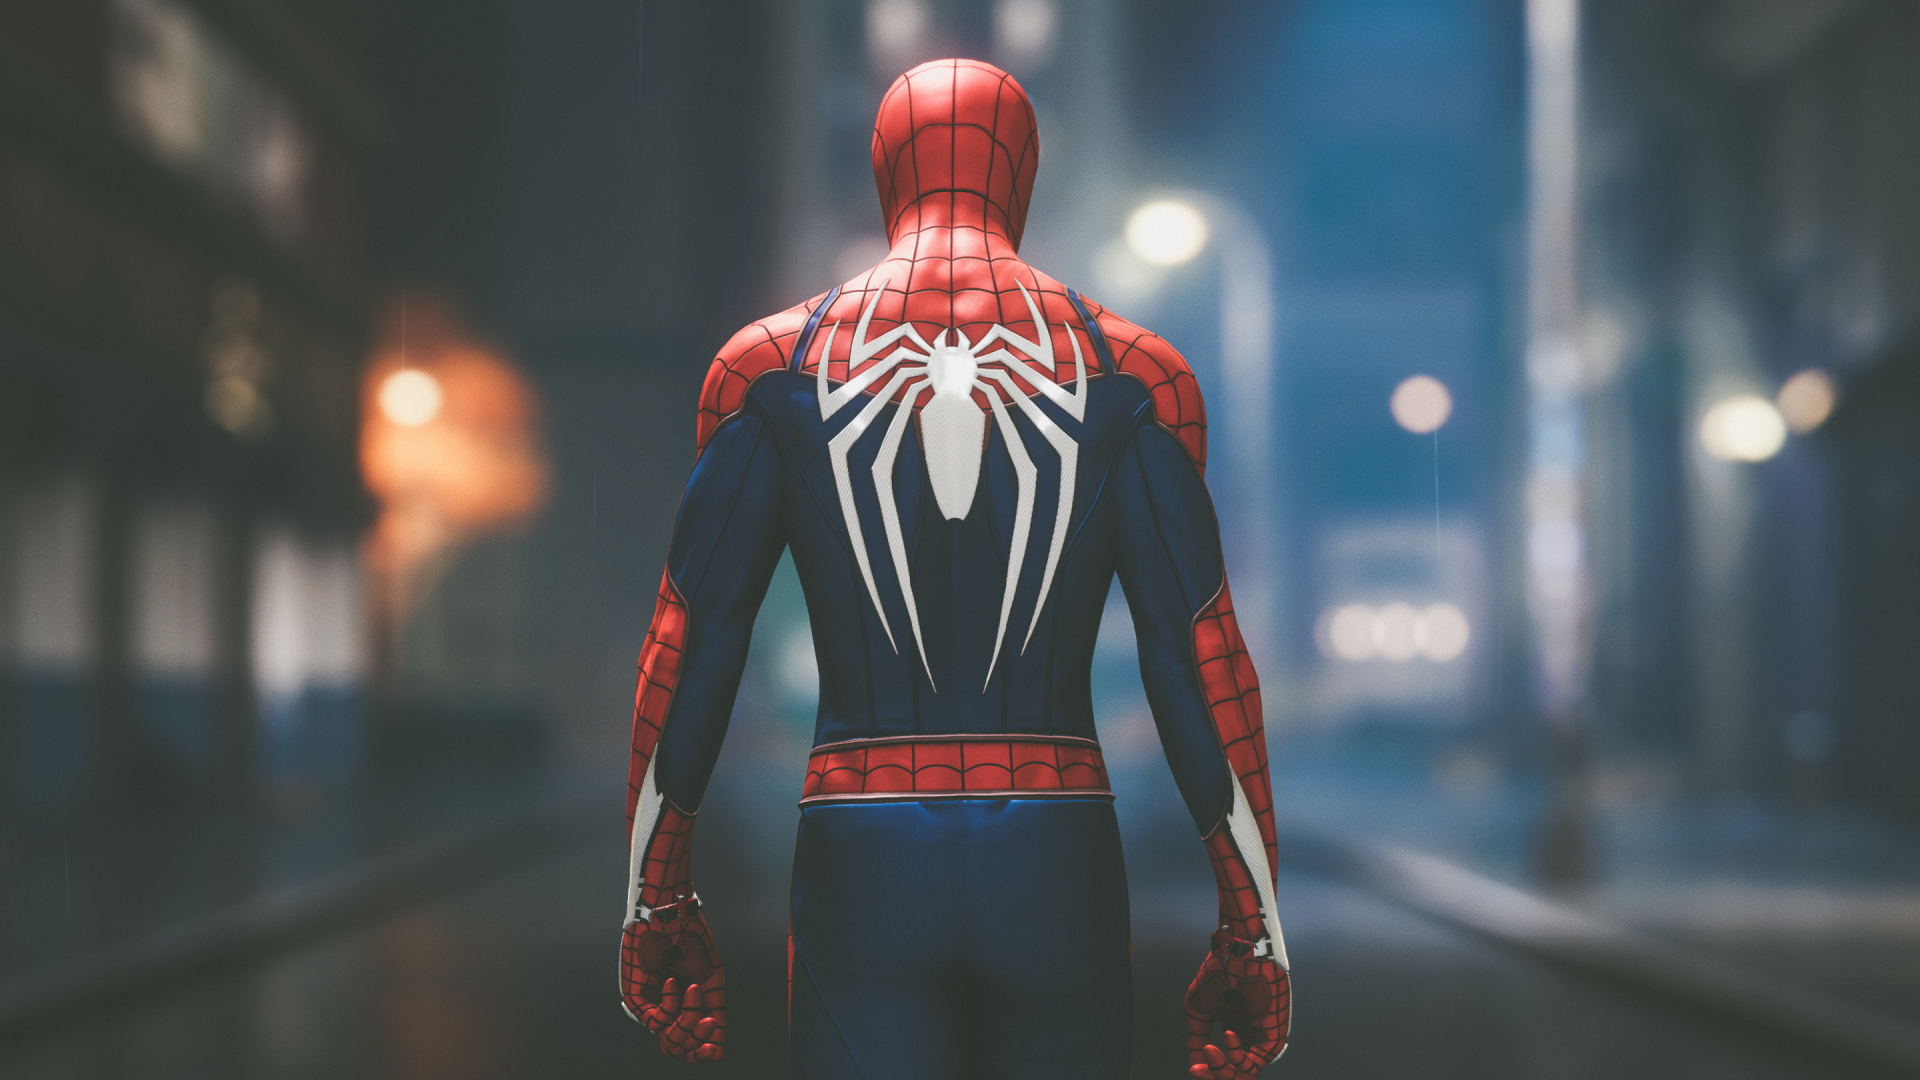 Spider-man, Superhéroe, Figura de Acción, Playstation 4, Personaje de Ficción. Wallpaper in 1920x1080 Resolution